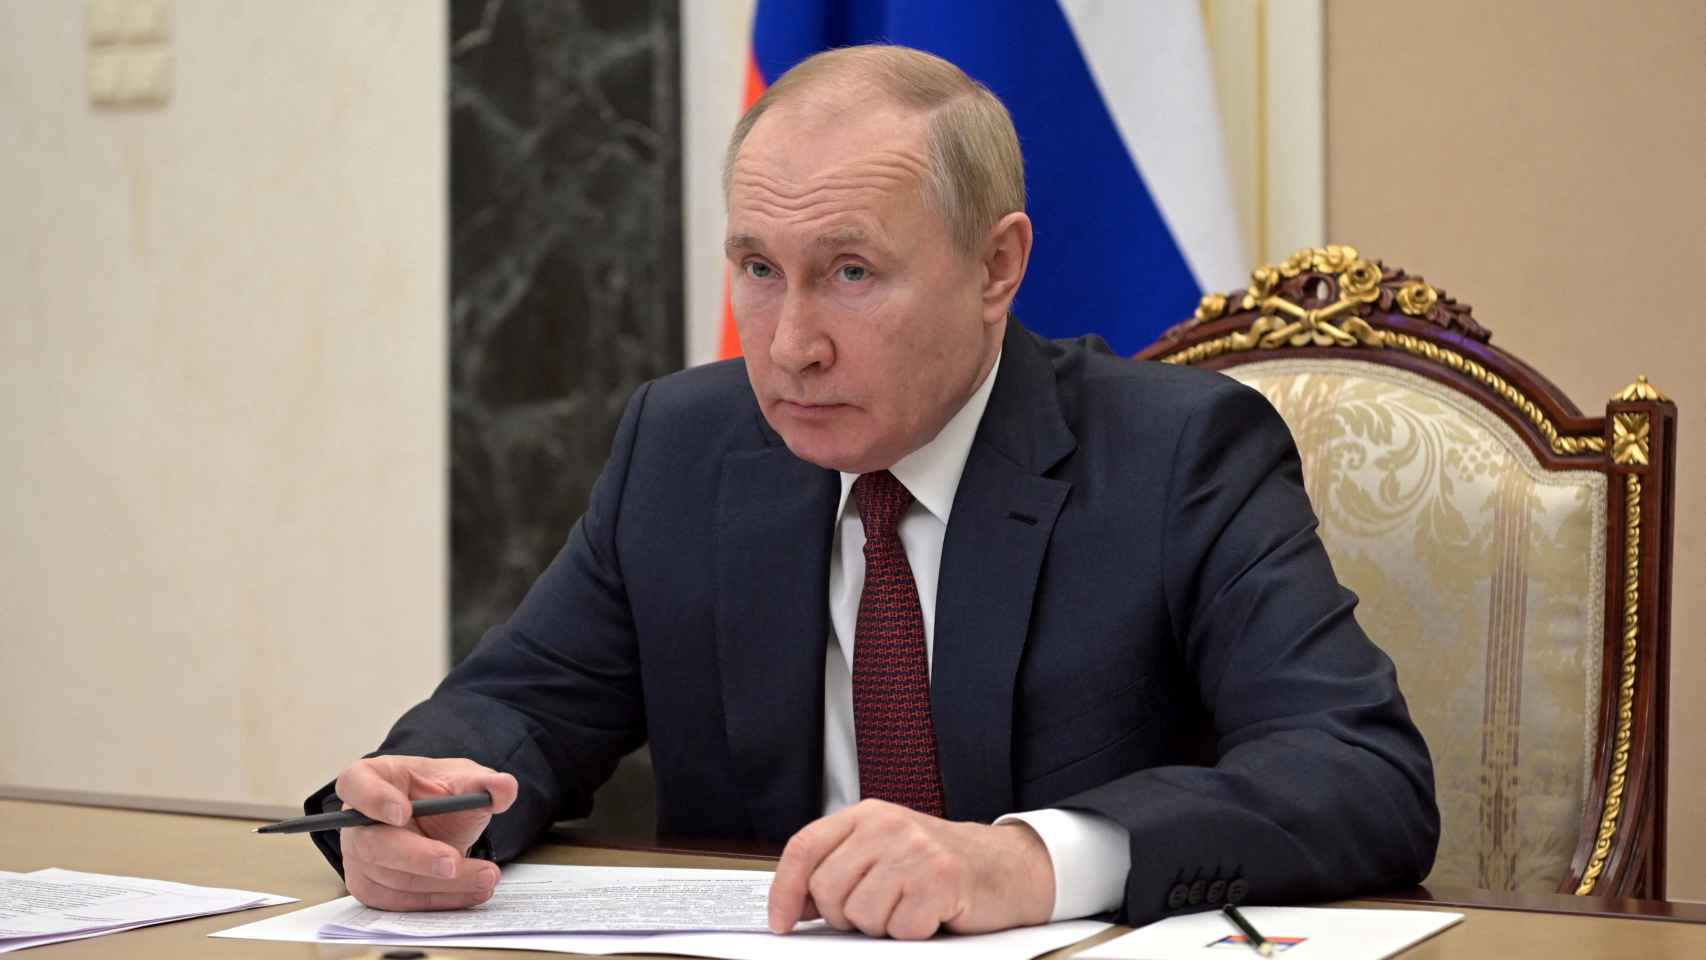 El presidente de Rusia, Vladimir Putin, durante una reunión en Moscú.